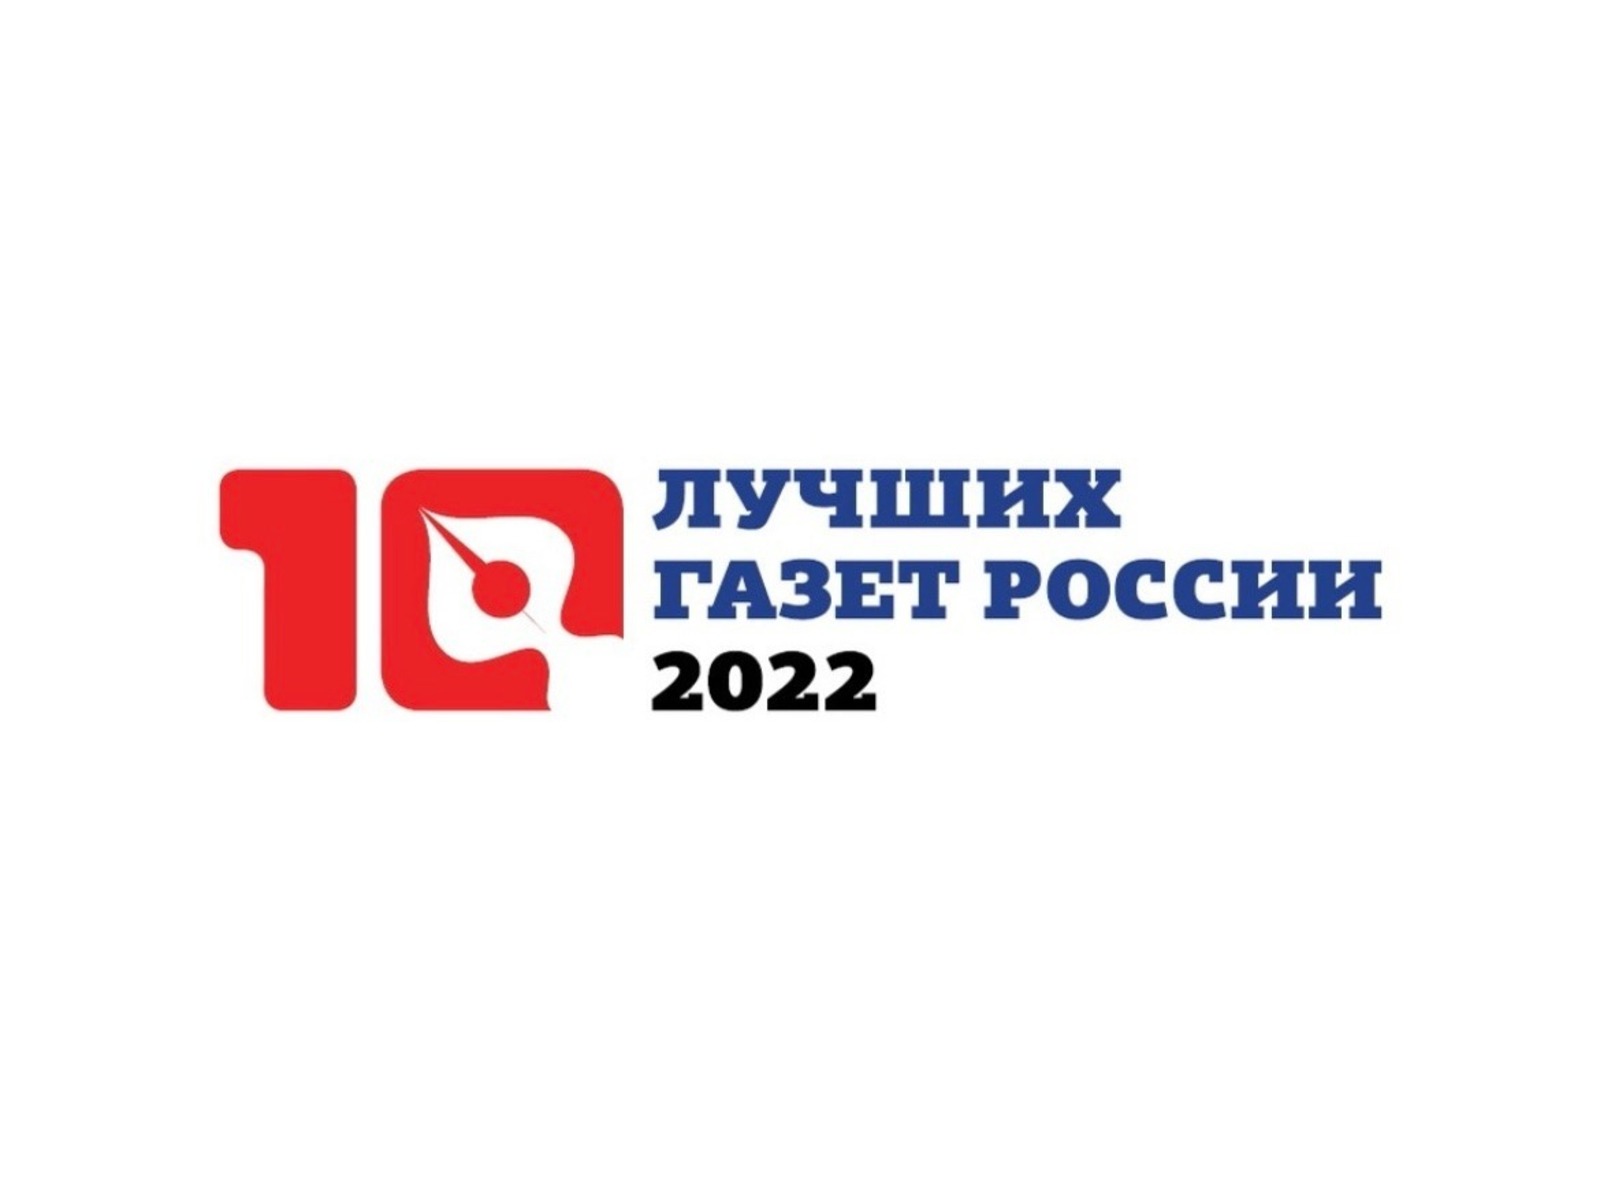 Издания Башкортостана стали призерами конкурса «10 лучших газет России»